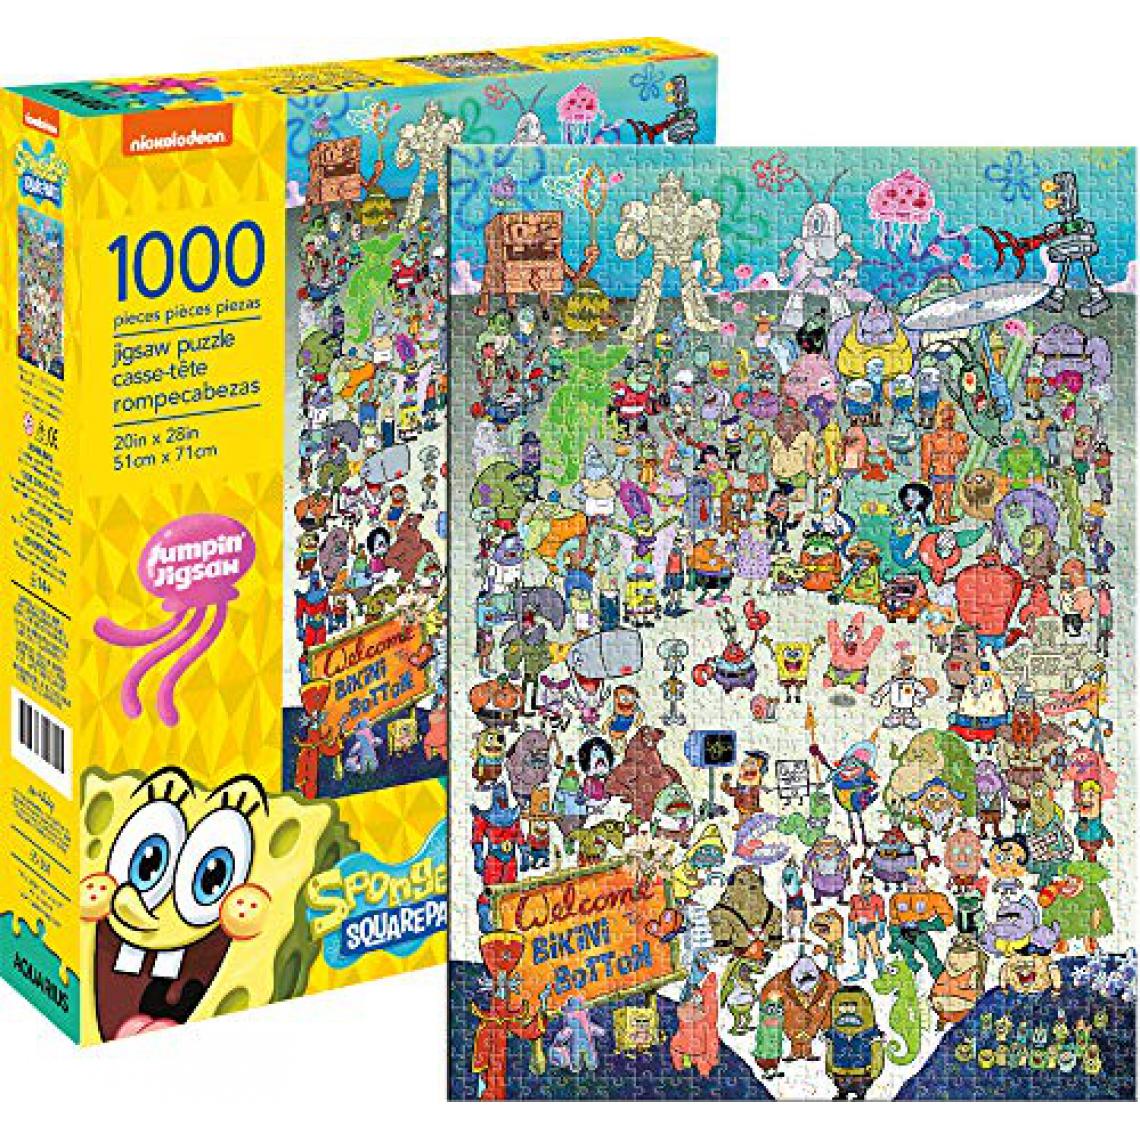 Aquarius - Aquarius Spongebob Squarepants Cast 1000 Pc Puzzle - Accessoires Puzzles